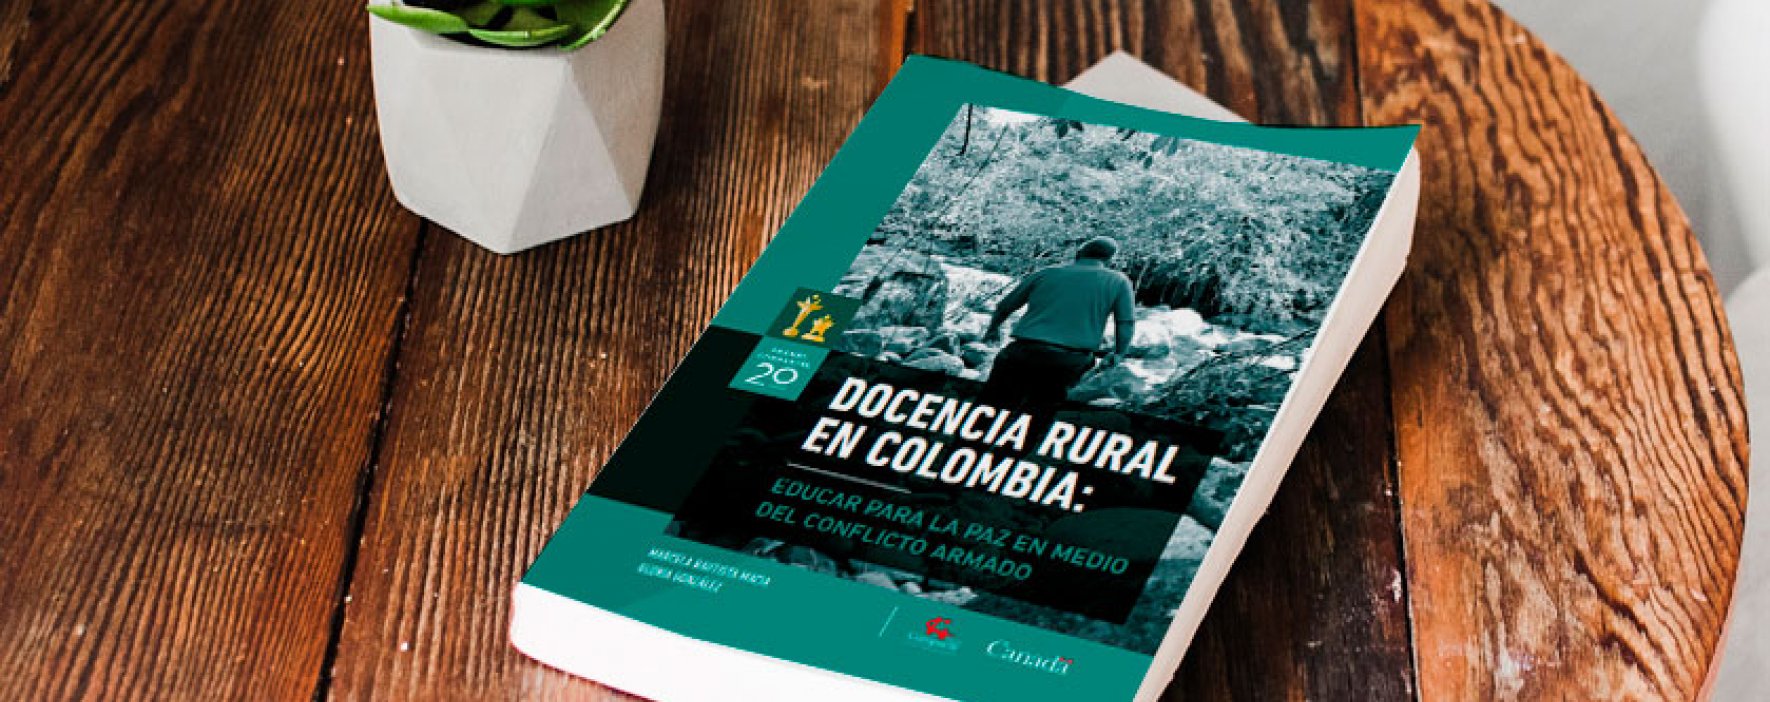 Lanzamiento del estudio ‘Docencia rural en Colombia’ en Valledupar, Cesar 